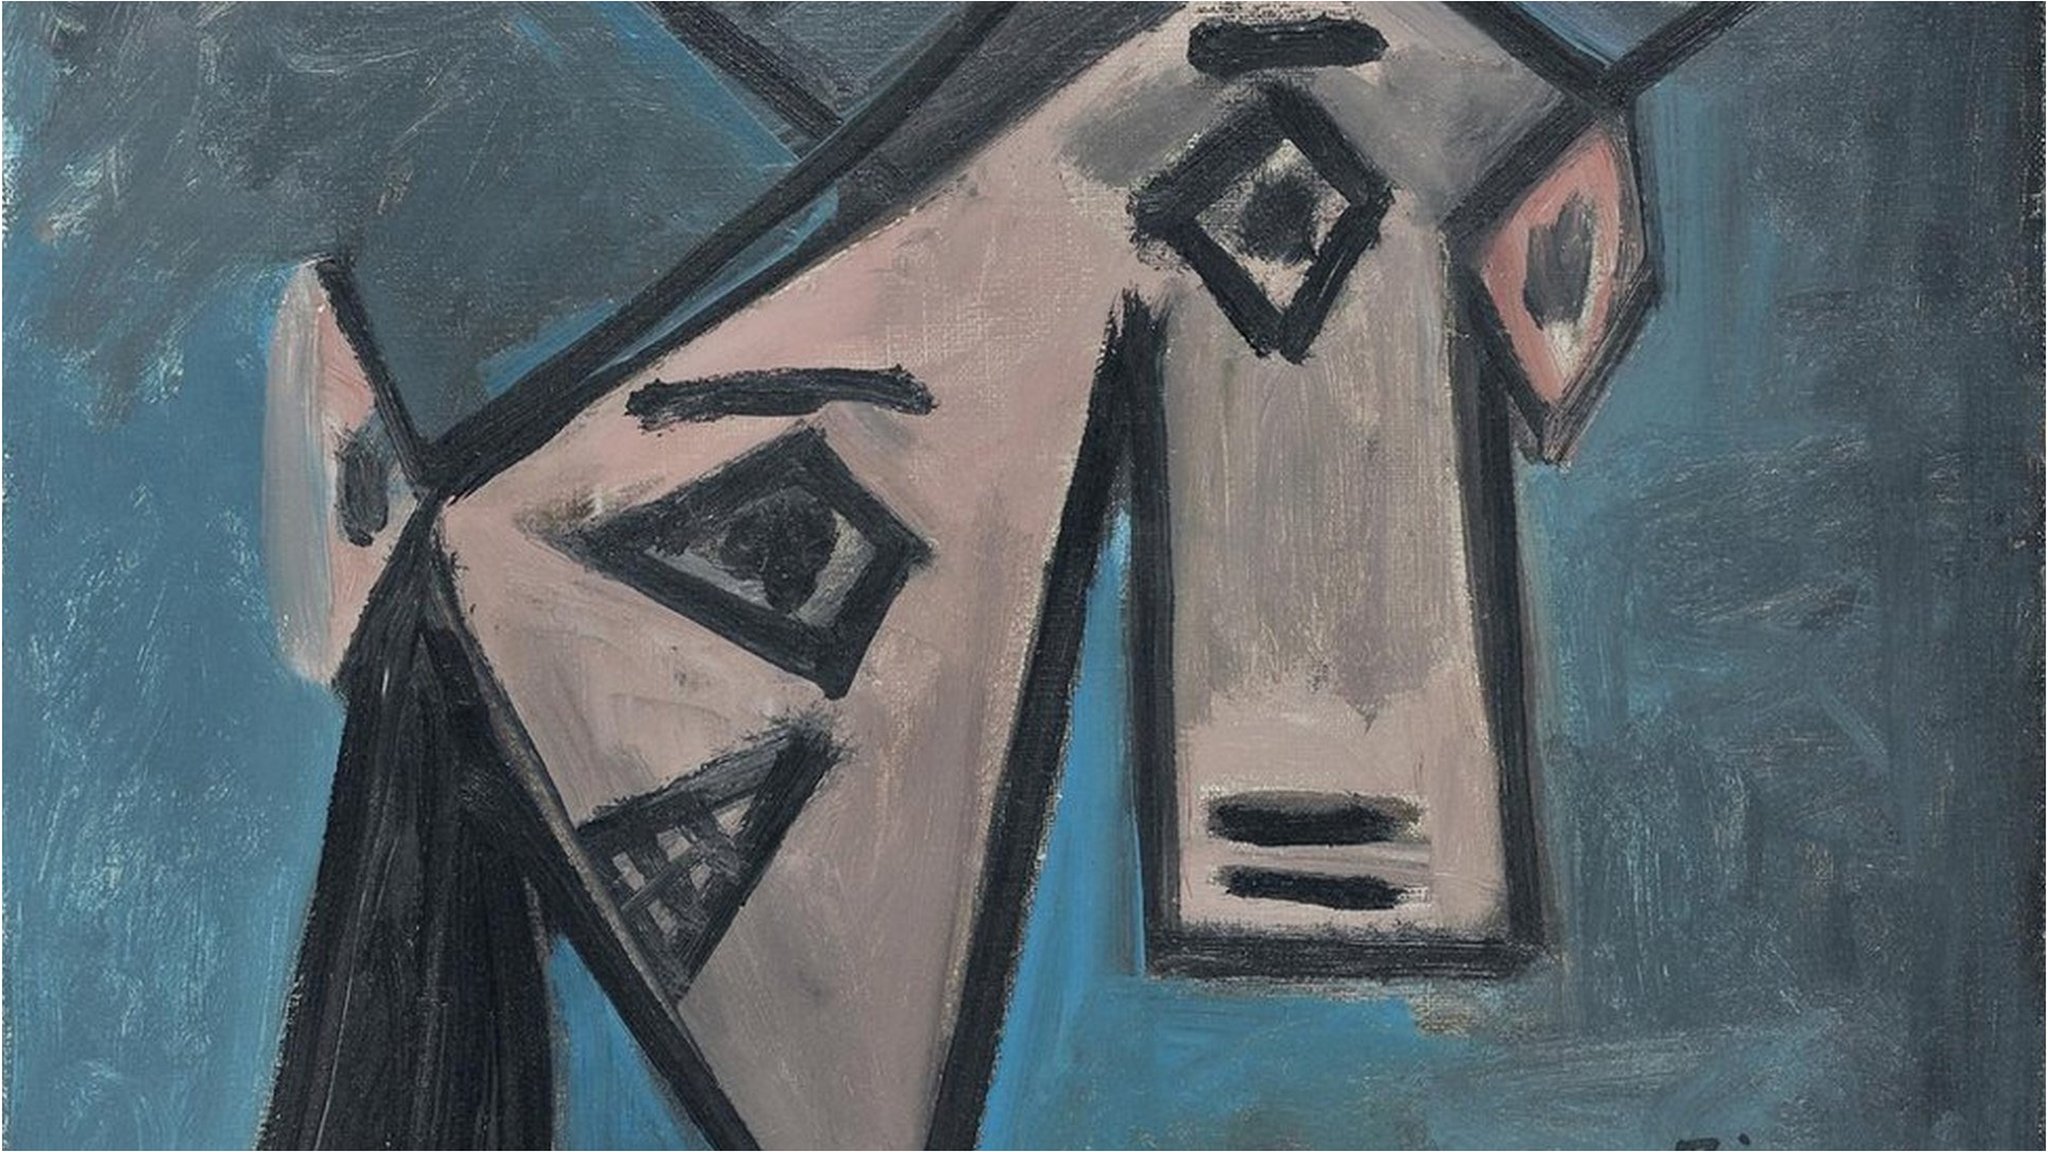 抽象画家モンドリアンの作品、75年間逆さまに展示か - BBCニュース